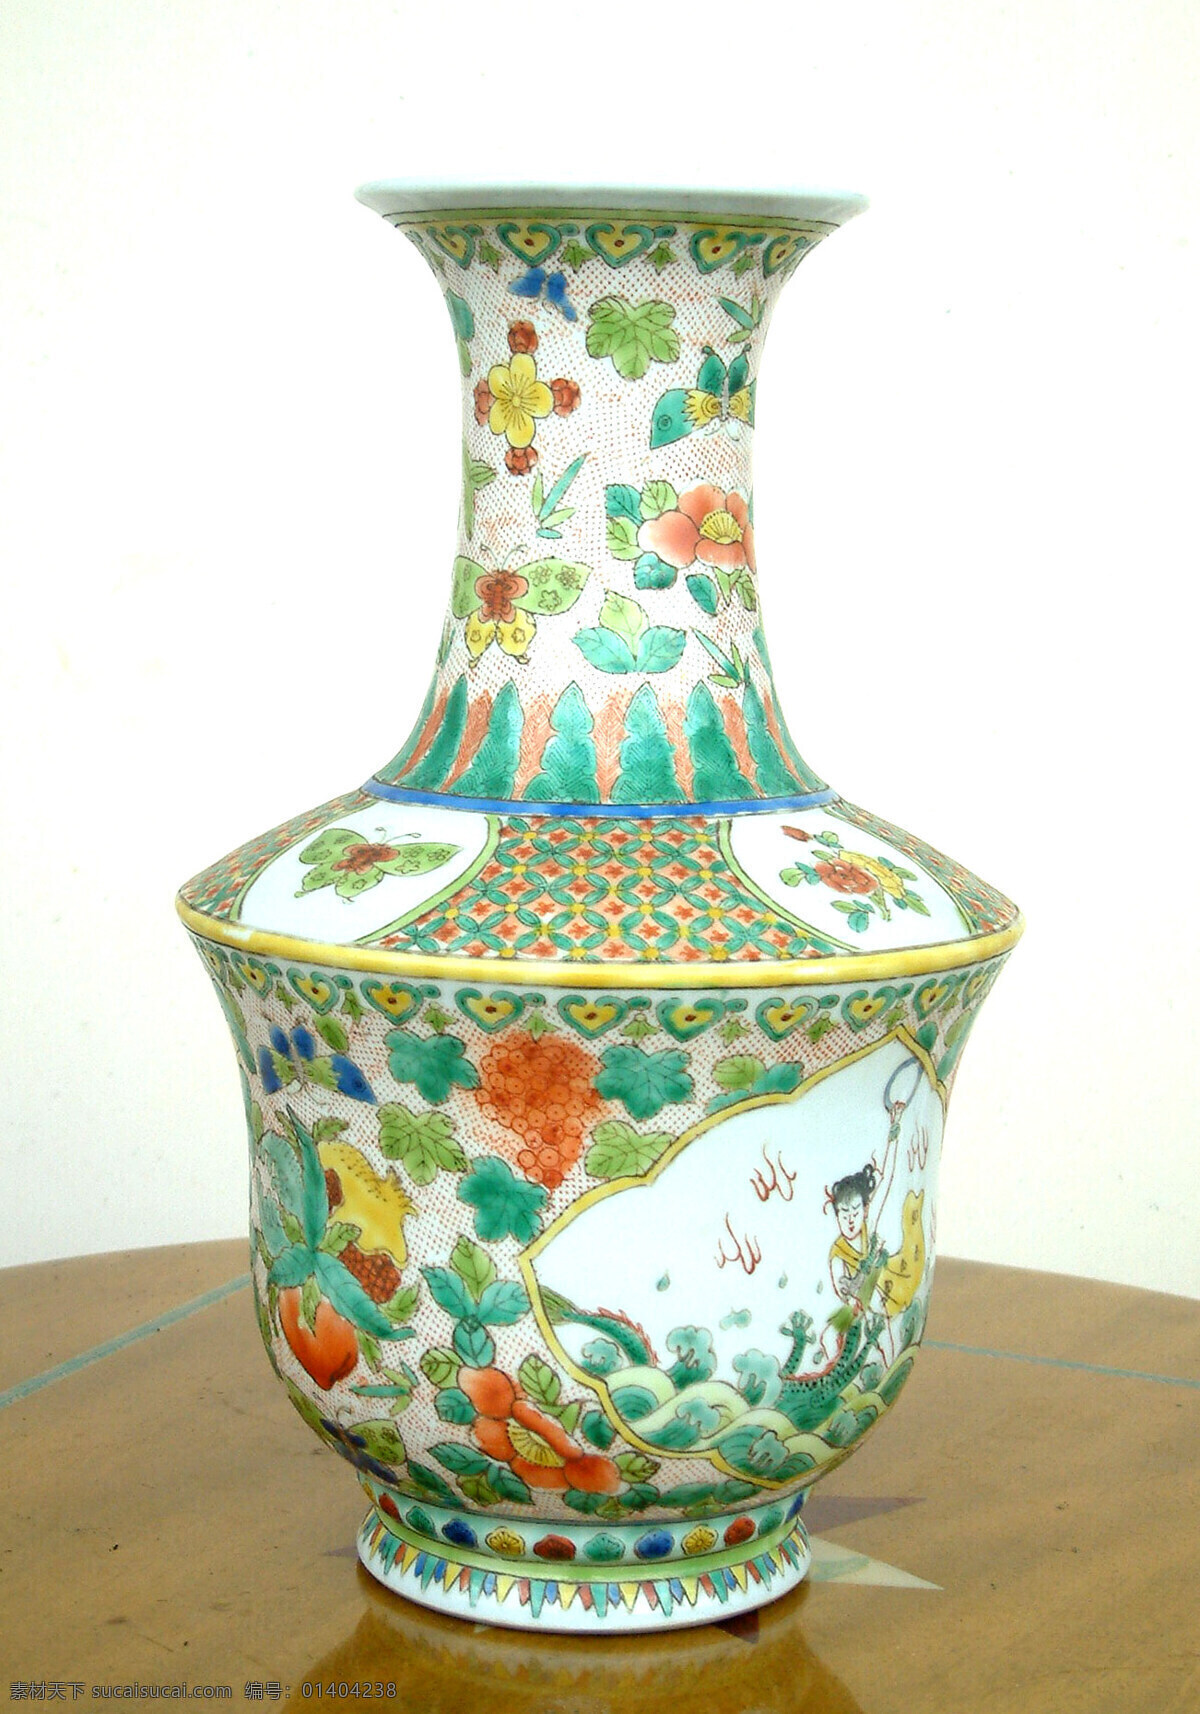 复古花瓶 复古 古玩 葫芦娃 花纹 花瓶 陶瓷 陶艺 传统文化 文化艺术